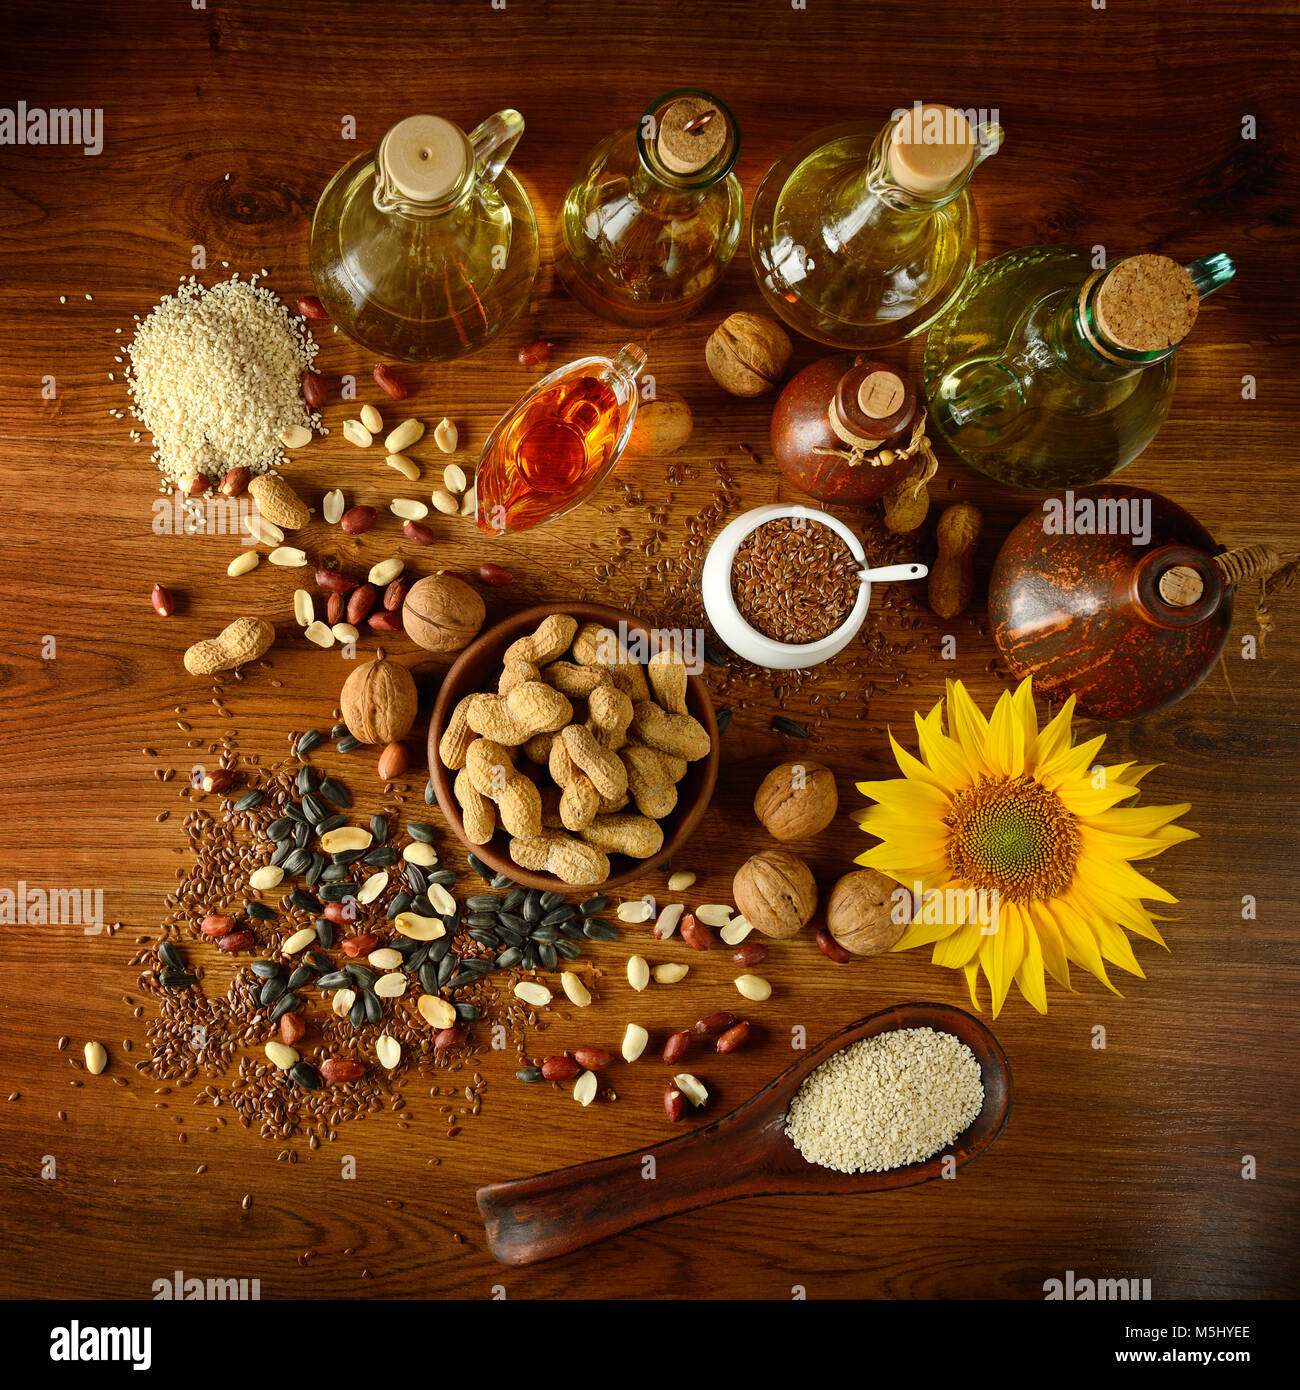 La vie toujours les semences et les huiles utiles pour la santé (Lin, sésame, tournesol, olives, noix, arachides). Vue d'en haut. Banque D'Images